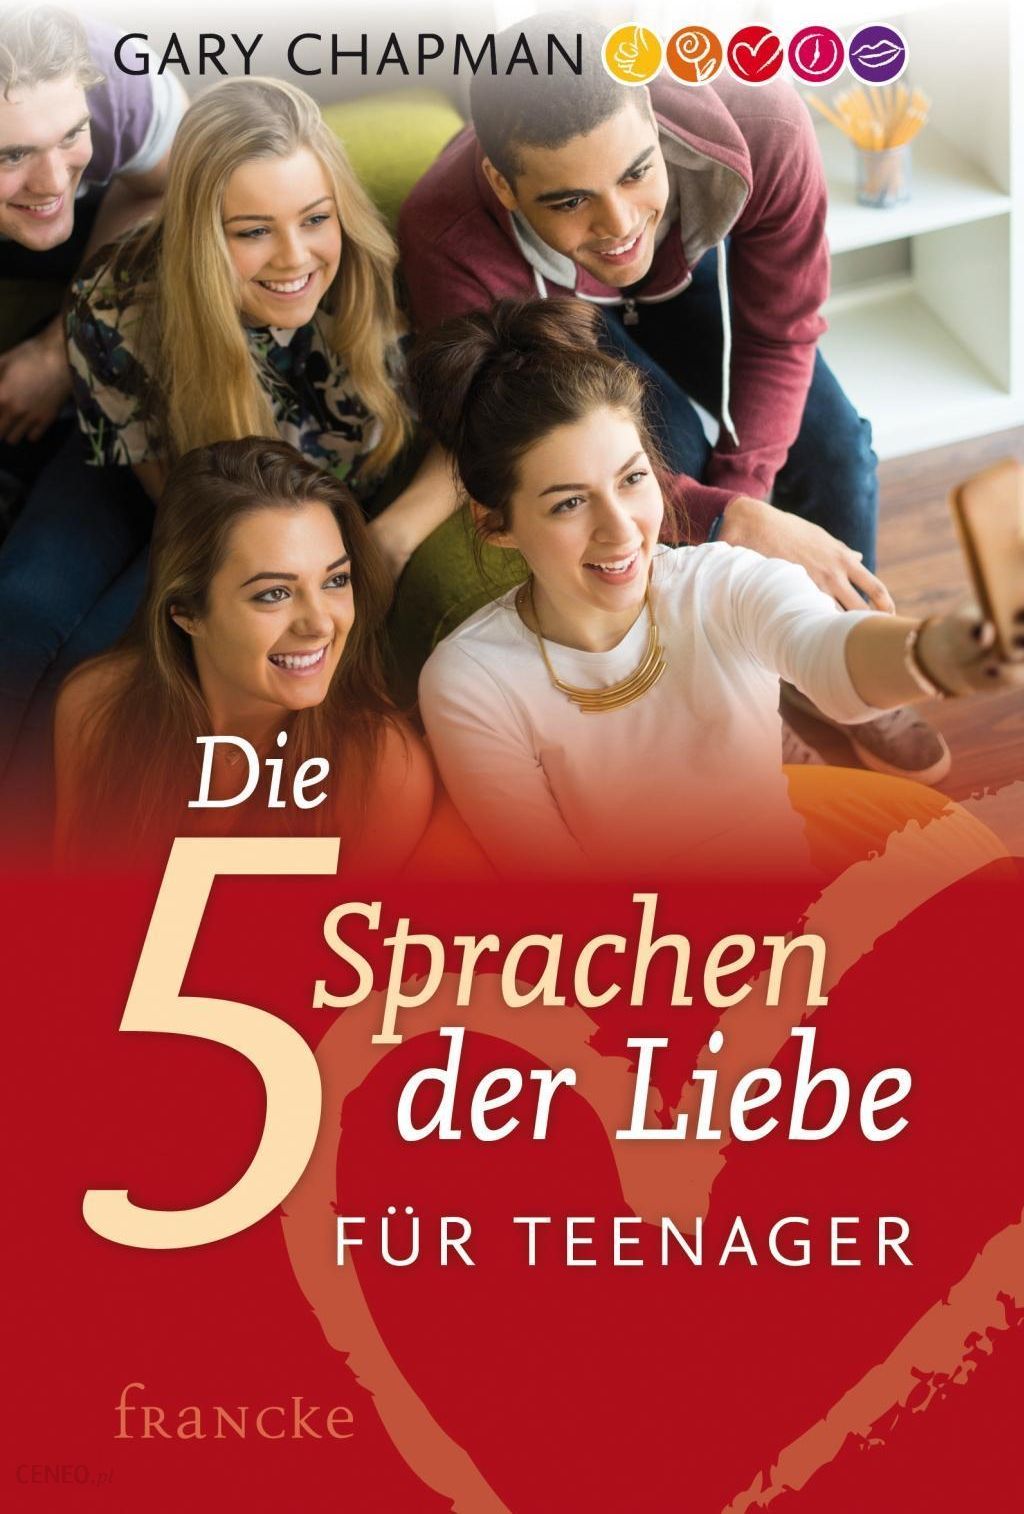 Deutsch fur teenagers. Kinder-Liebe магазине.